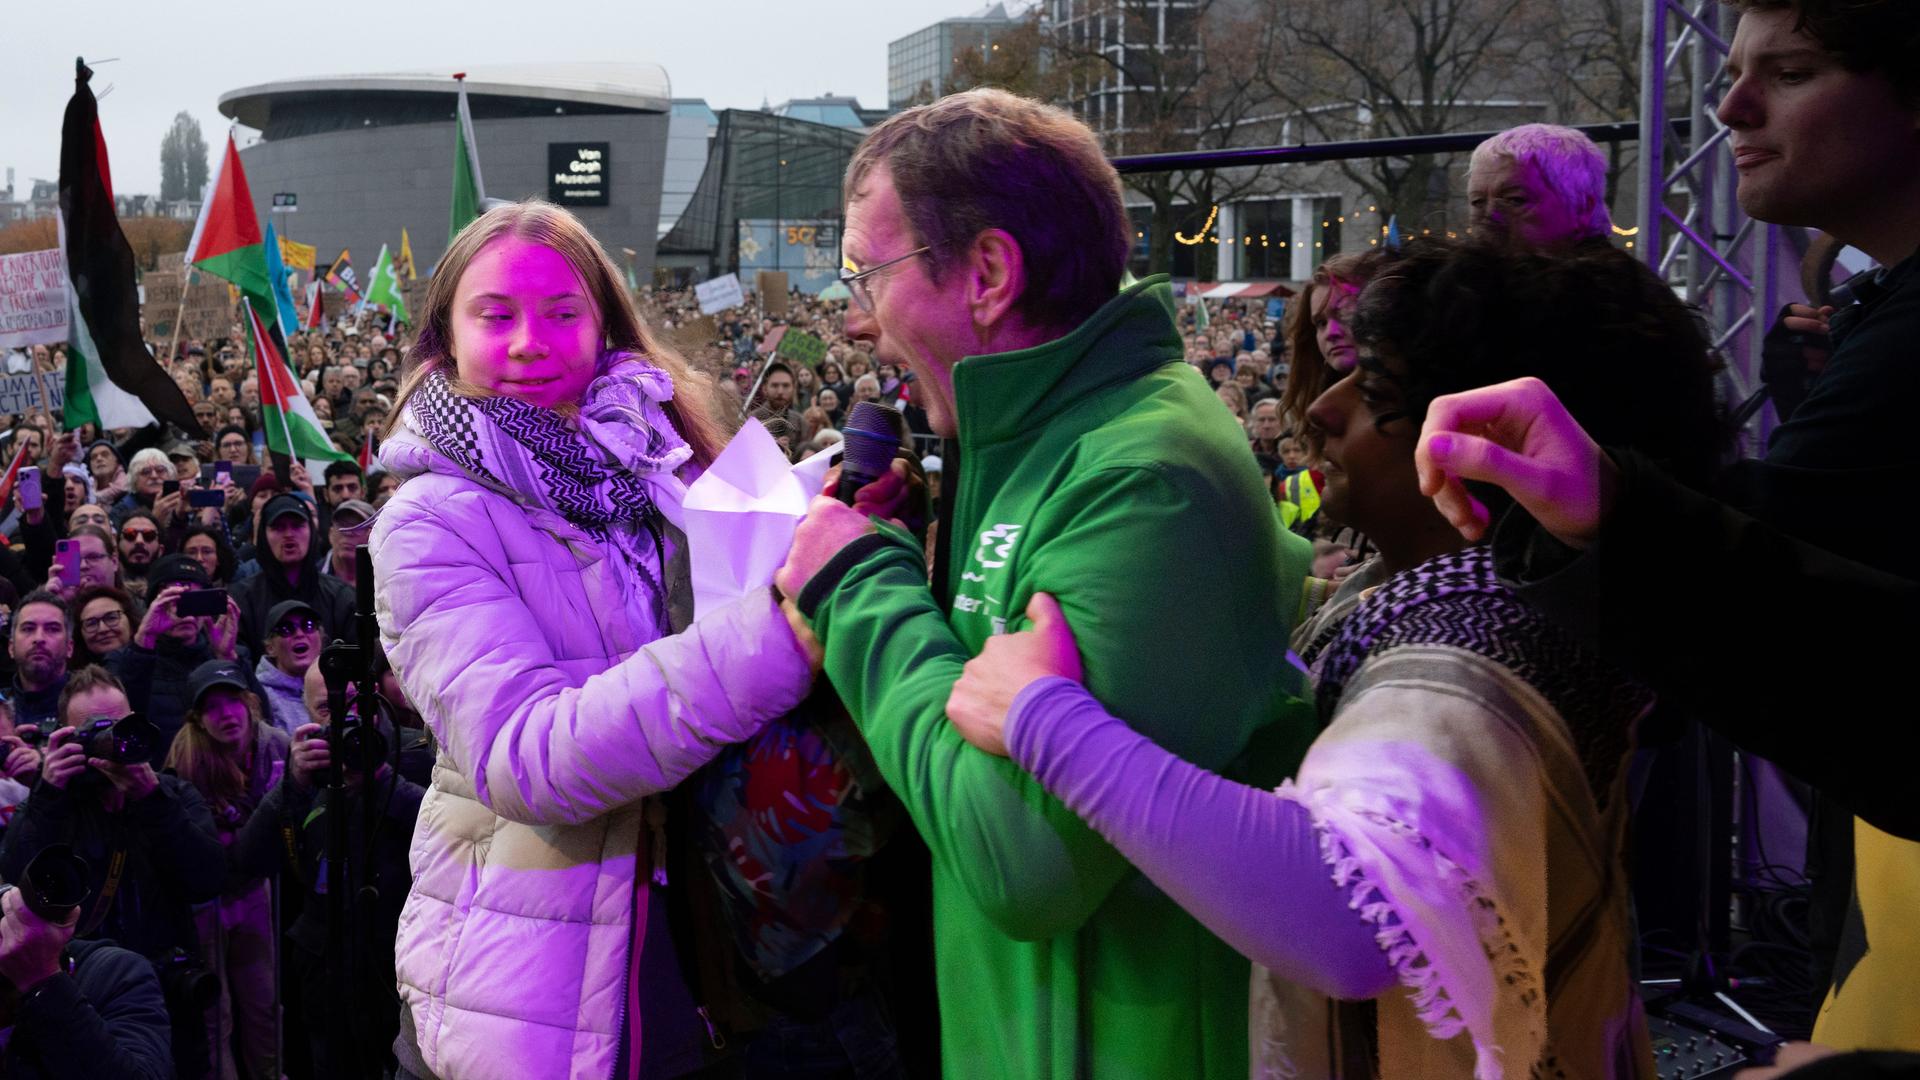 Das Bild zeigt die Klimaaktivistin Greta Thunber auf einer Bühne in Amsterdam, links neben ihr ein Mann aus dem Publikum in grüner Jacke, der ihr das Mikrofon weggenommen hat.